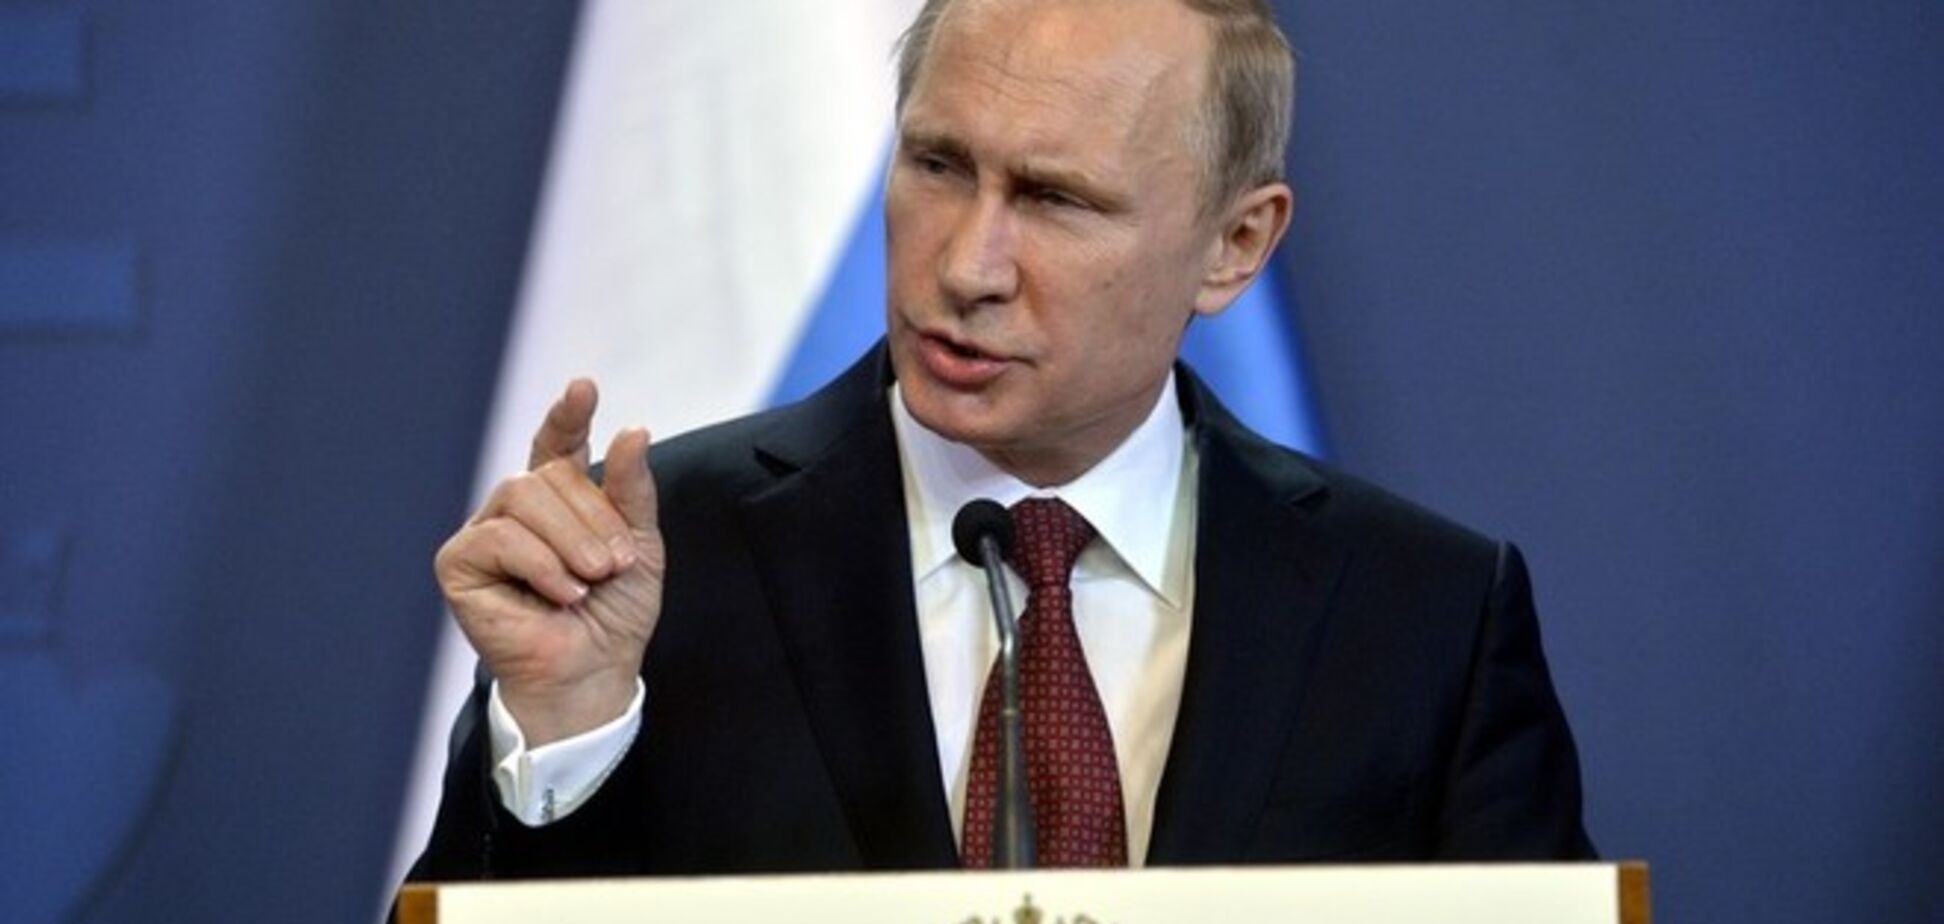 Путин 'поверил' что он миротворец, когда окончательно утратил доверие Запада - журналист